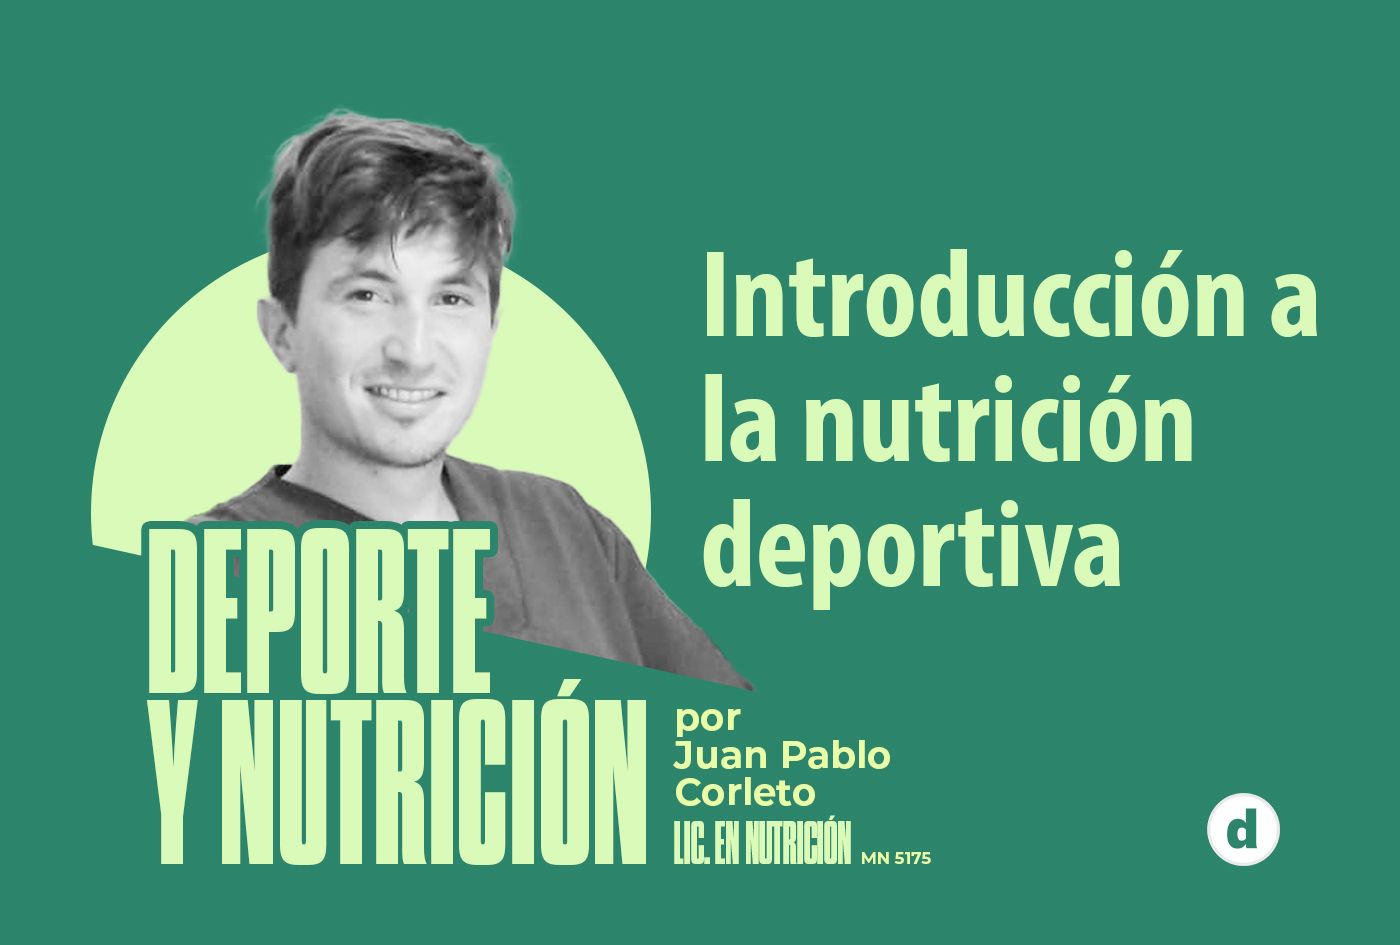 La columna de Juan Pablo Corleto: “Introducción a la nutrición deportiva”